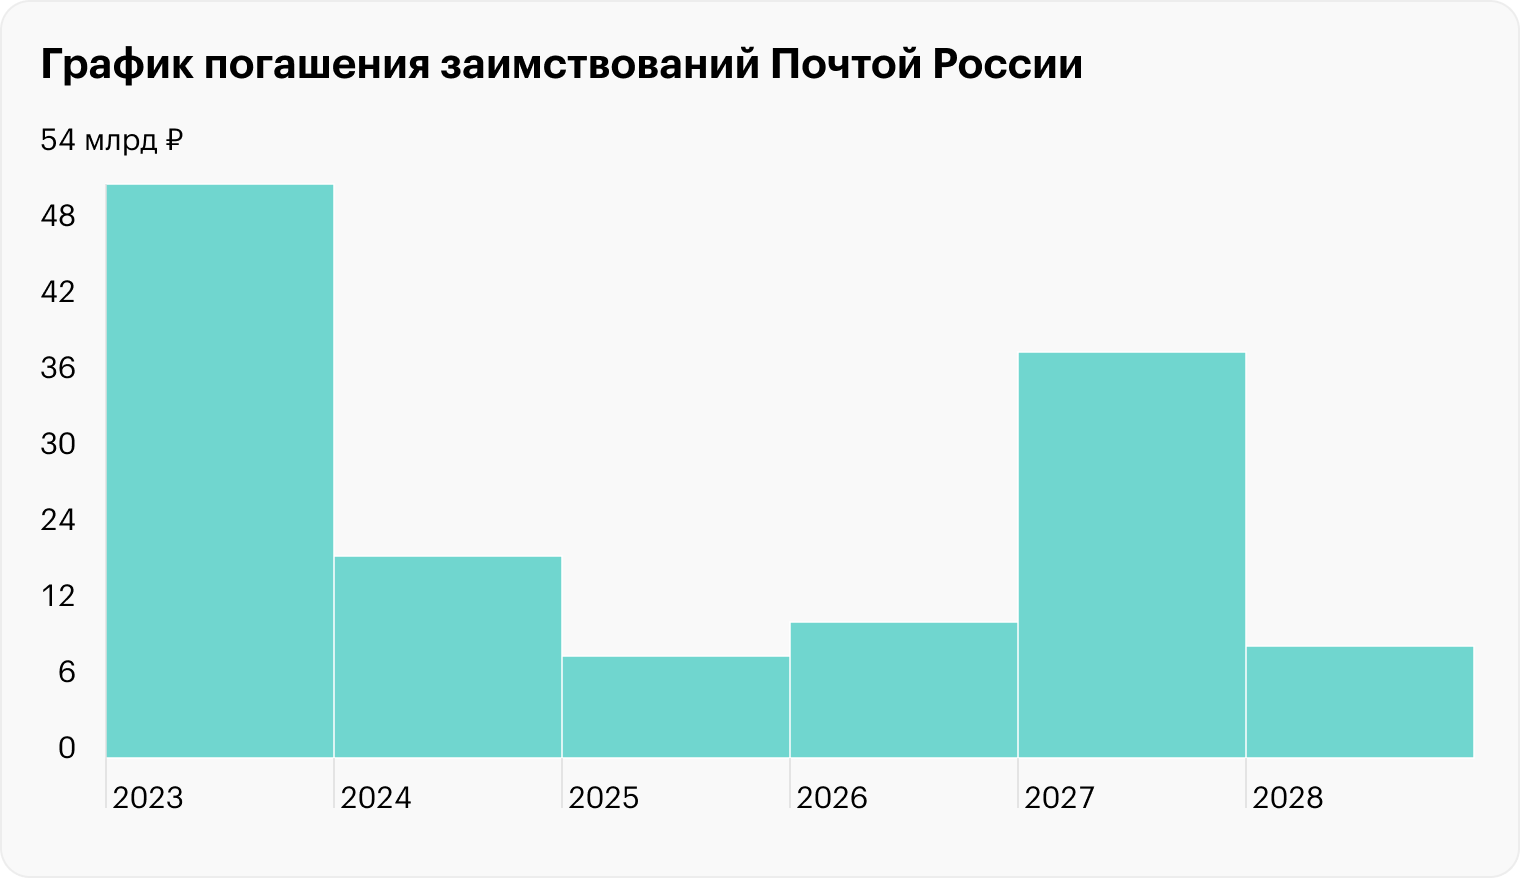 Источник: годовой отчет Почты России за 2022 год, стр. 106 (стр. 53 документа)